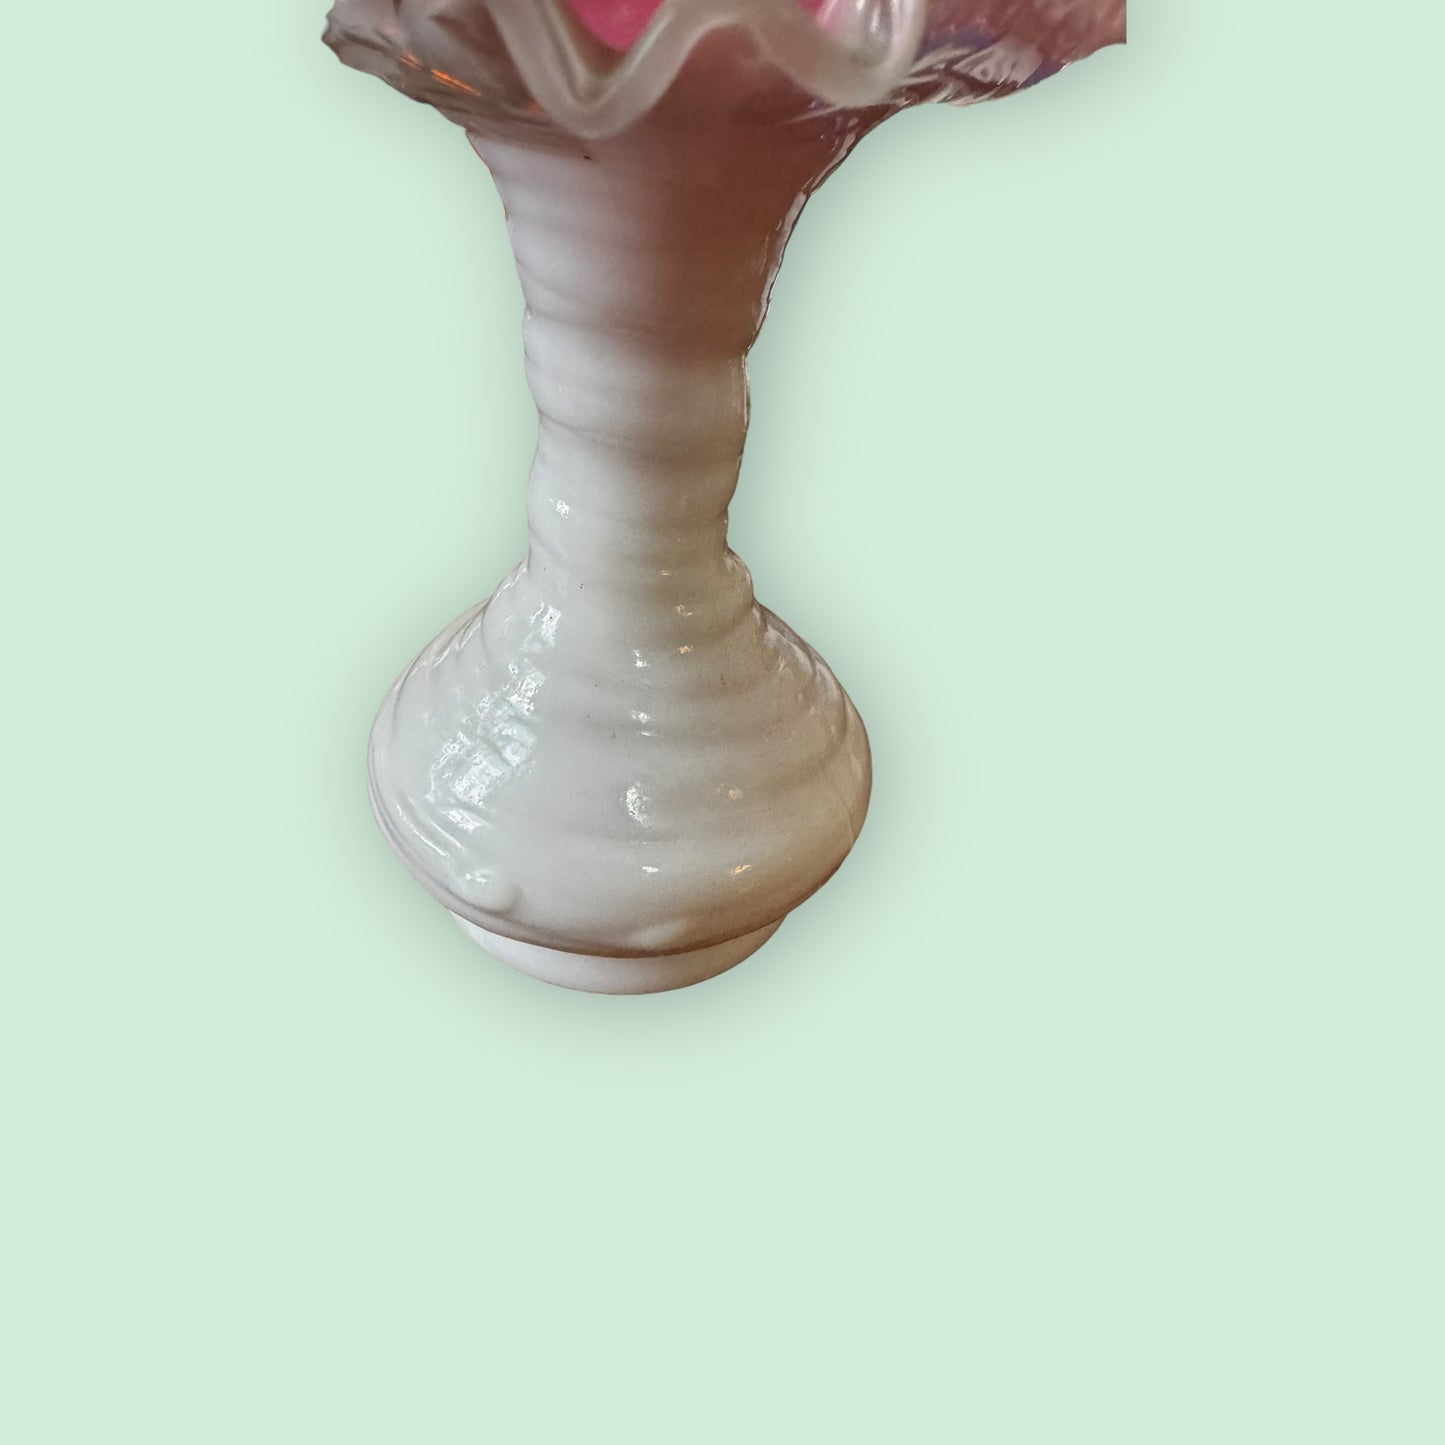 Fenton Vintage Pink Peach Cased In Milk Glass Crest Ruffle Vase